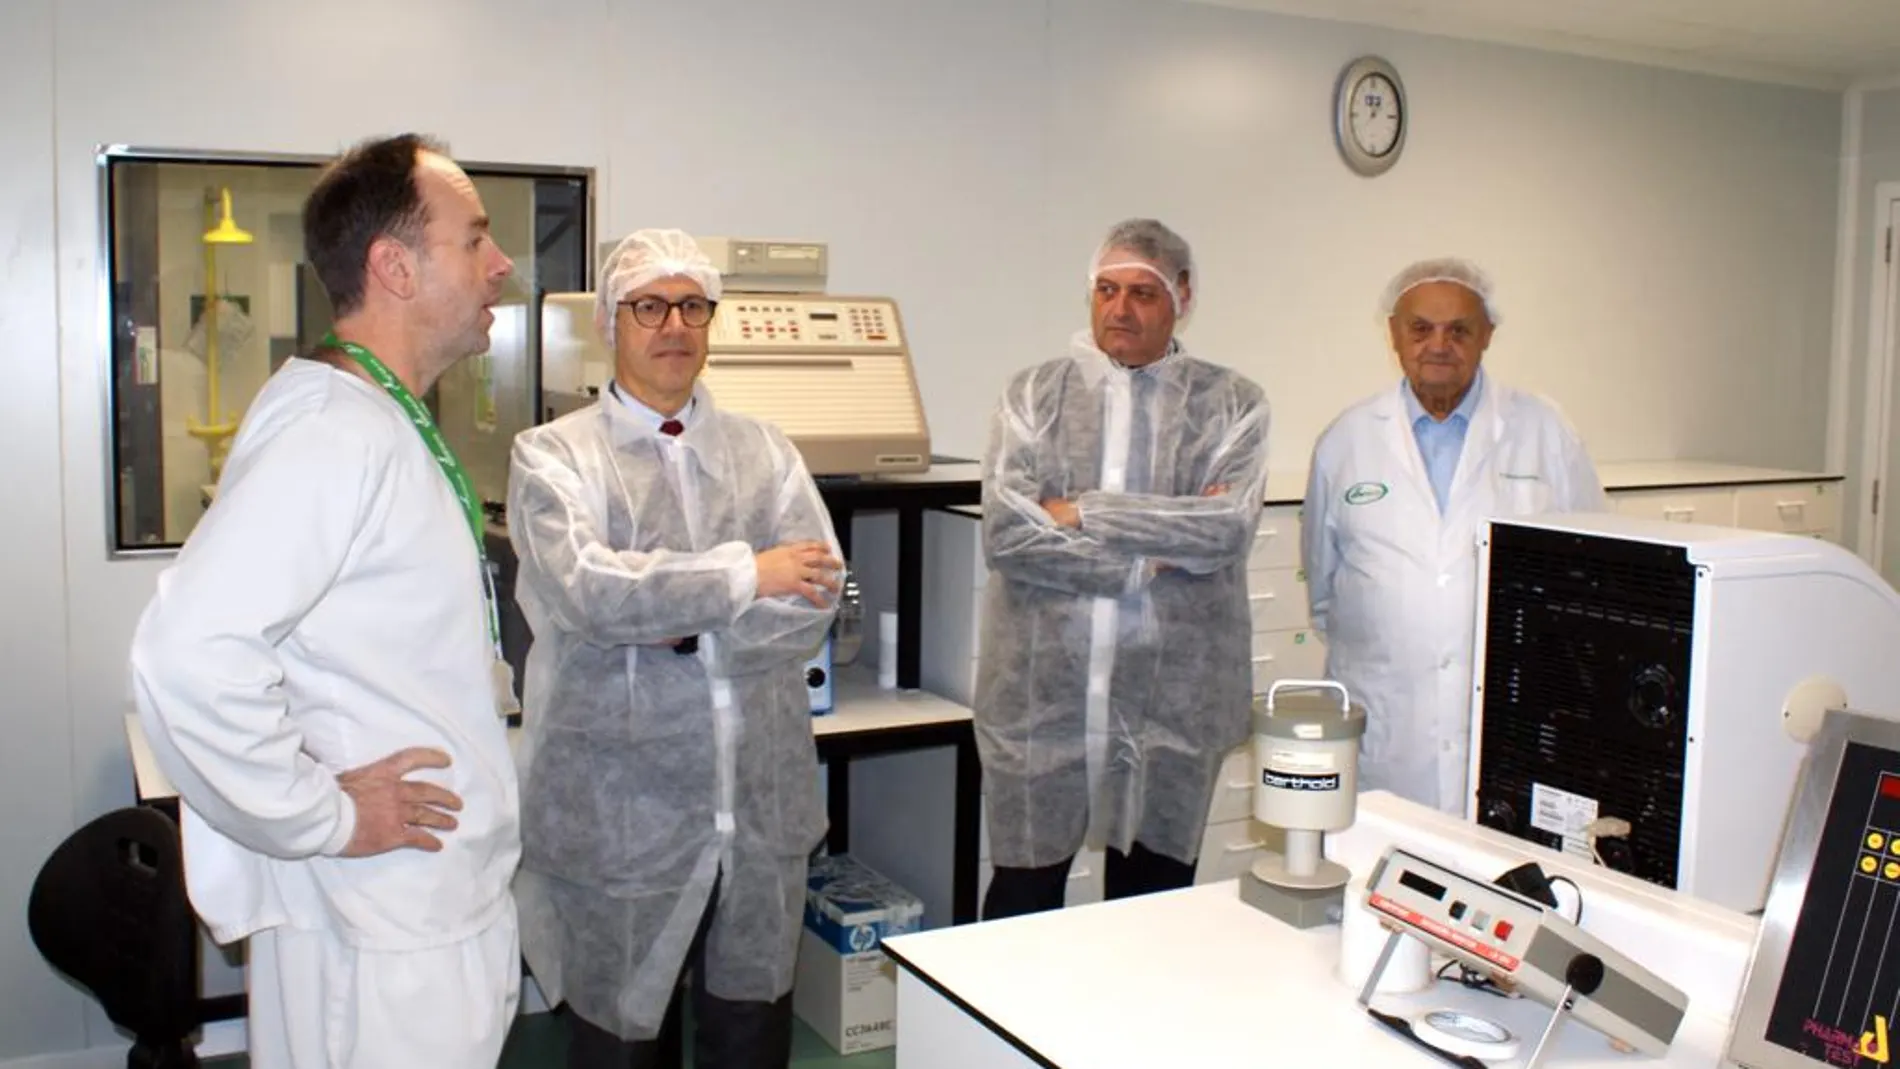 El consejero de Industria, Comercio y Empleo, Mariano Veganzones, visita las instalaciones de Soria Natural en Garray (Soria)